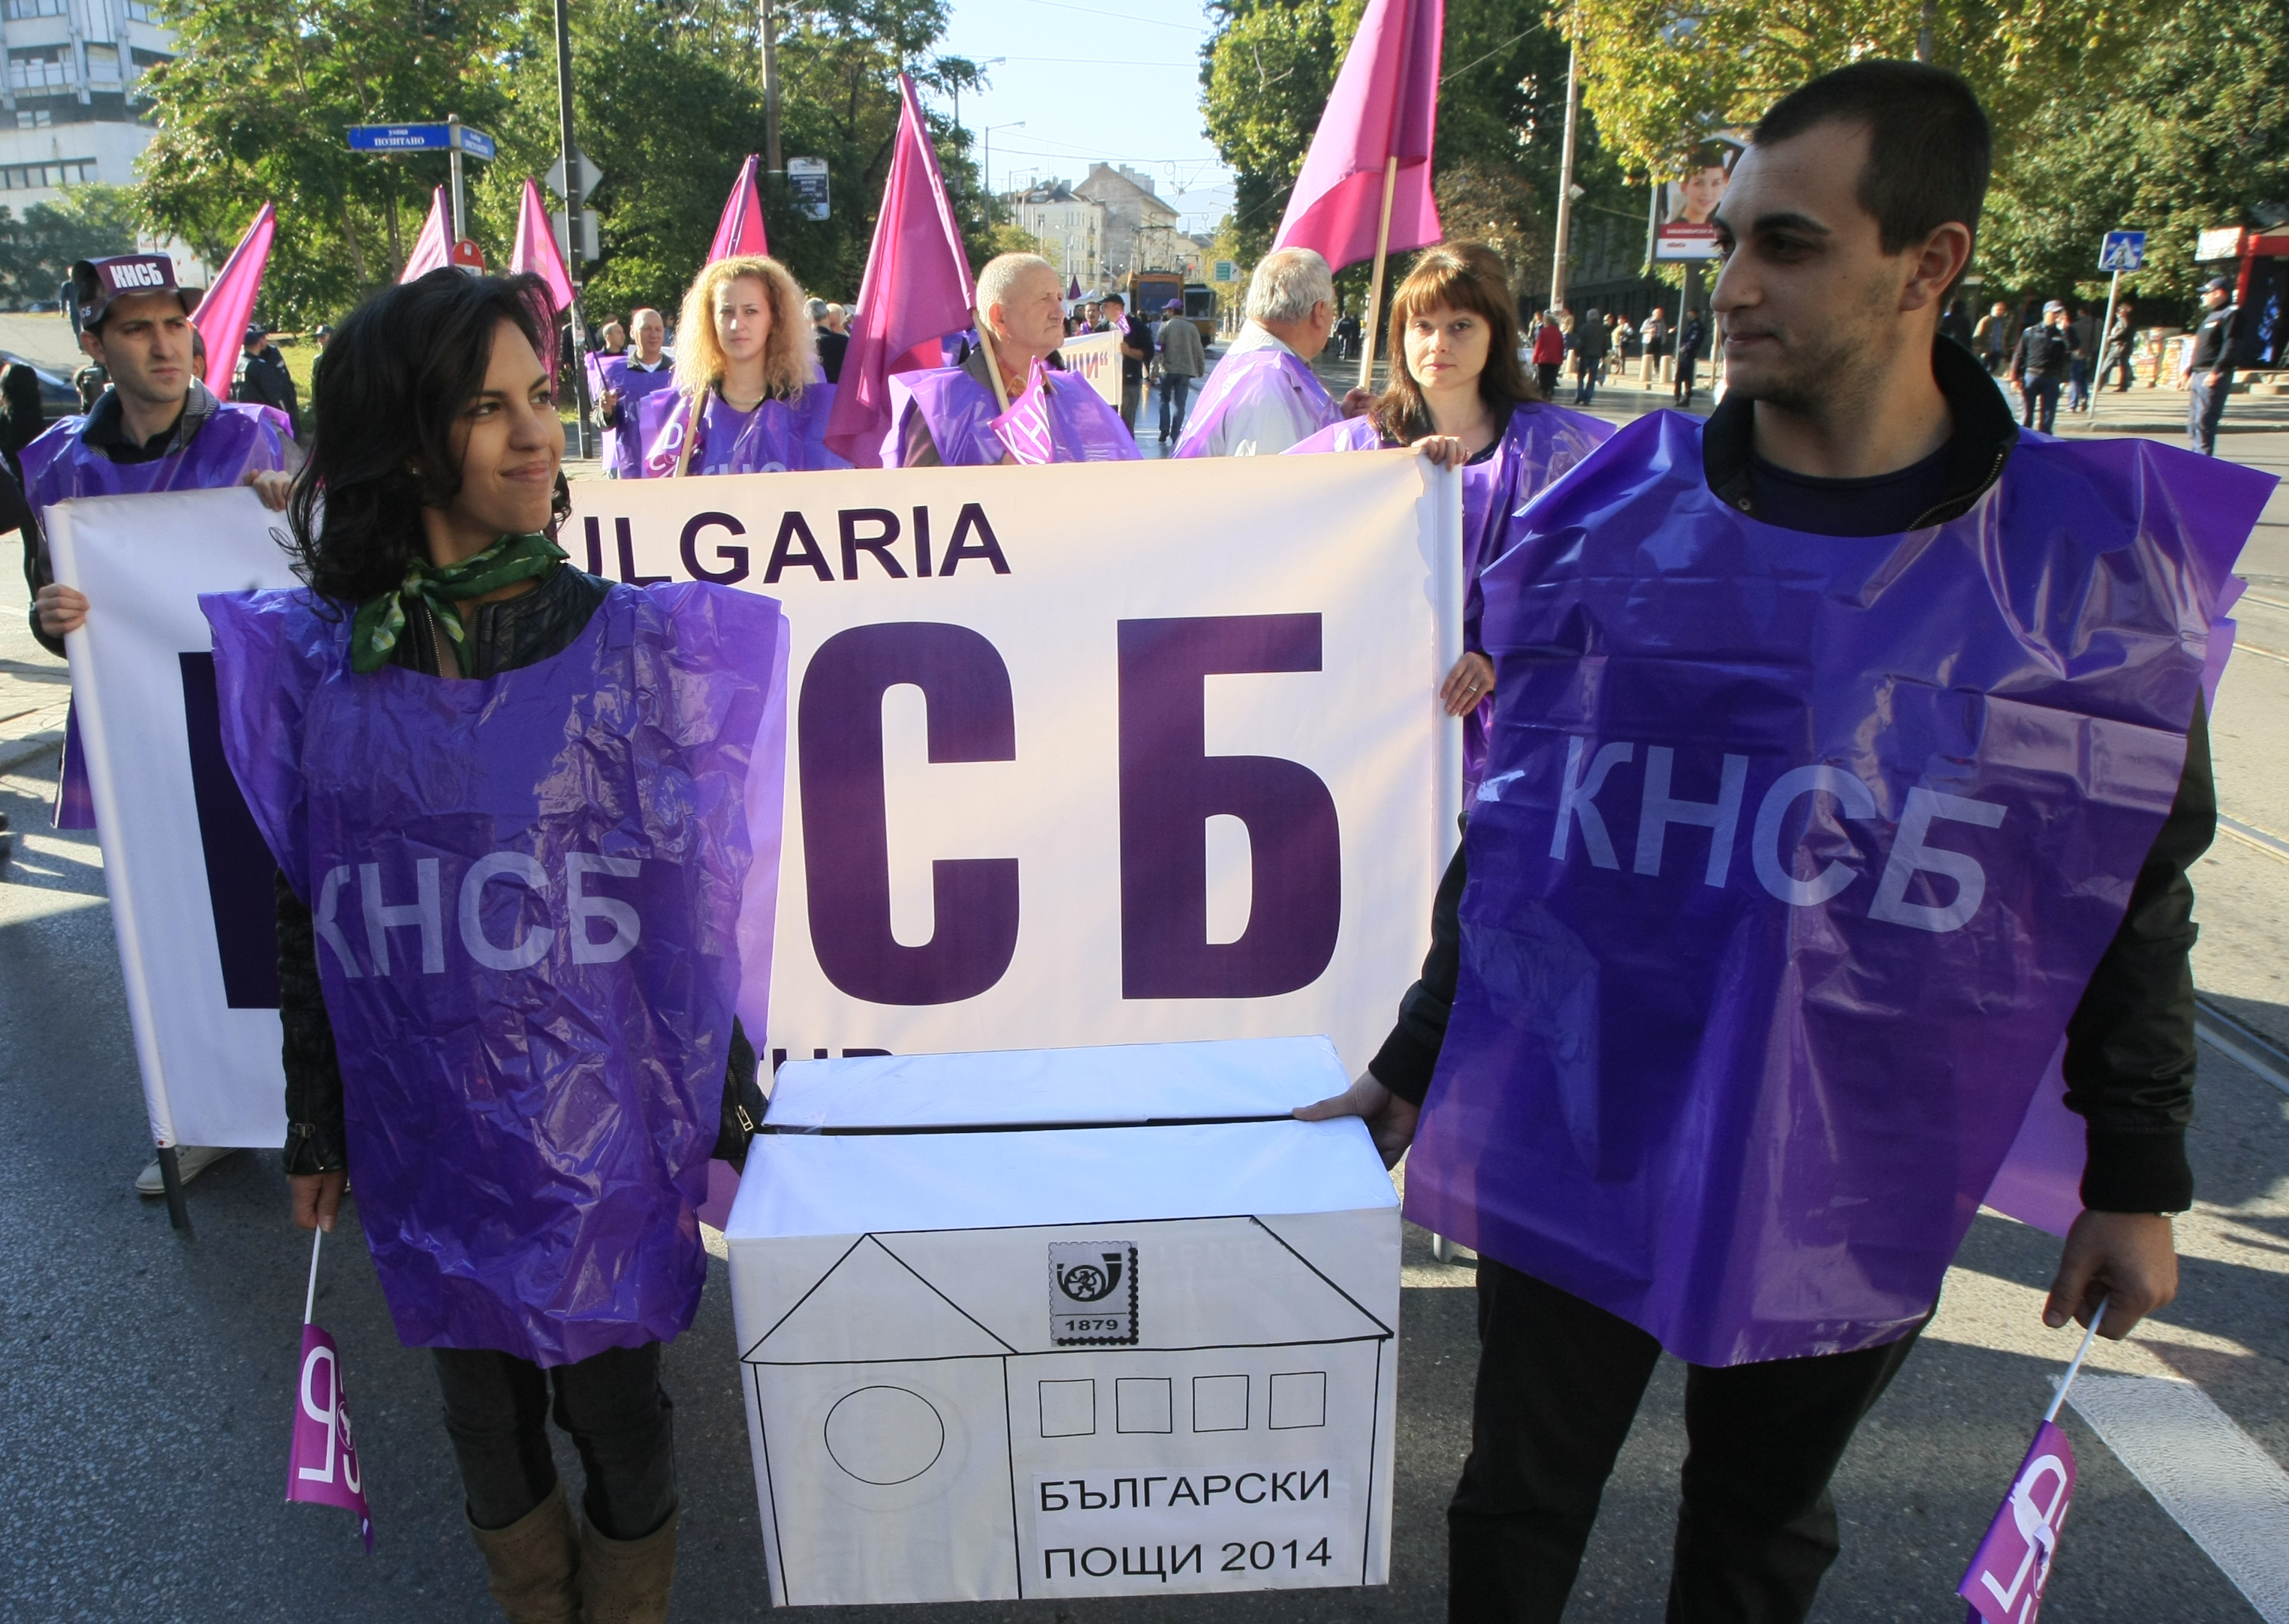 ”Български пощи” на протест, кабинетът им даде 6,5 млн.